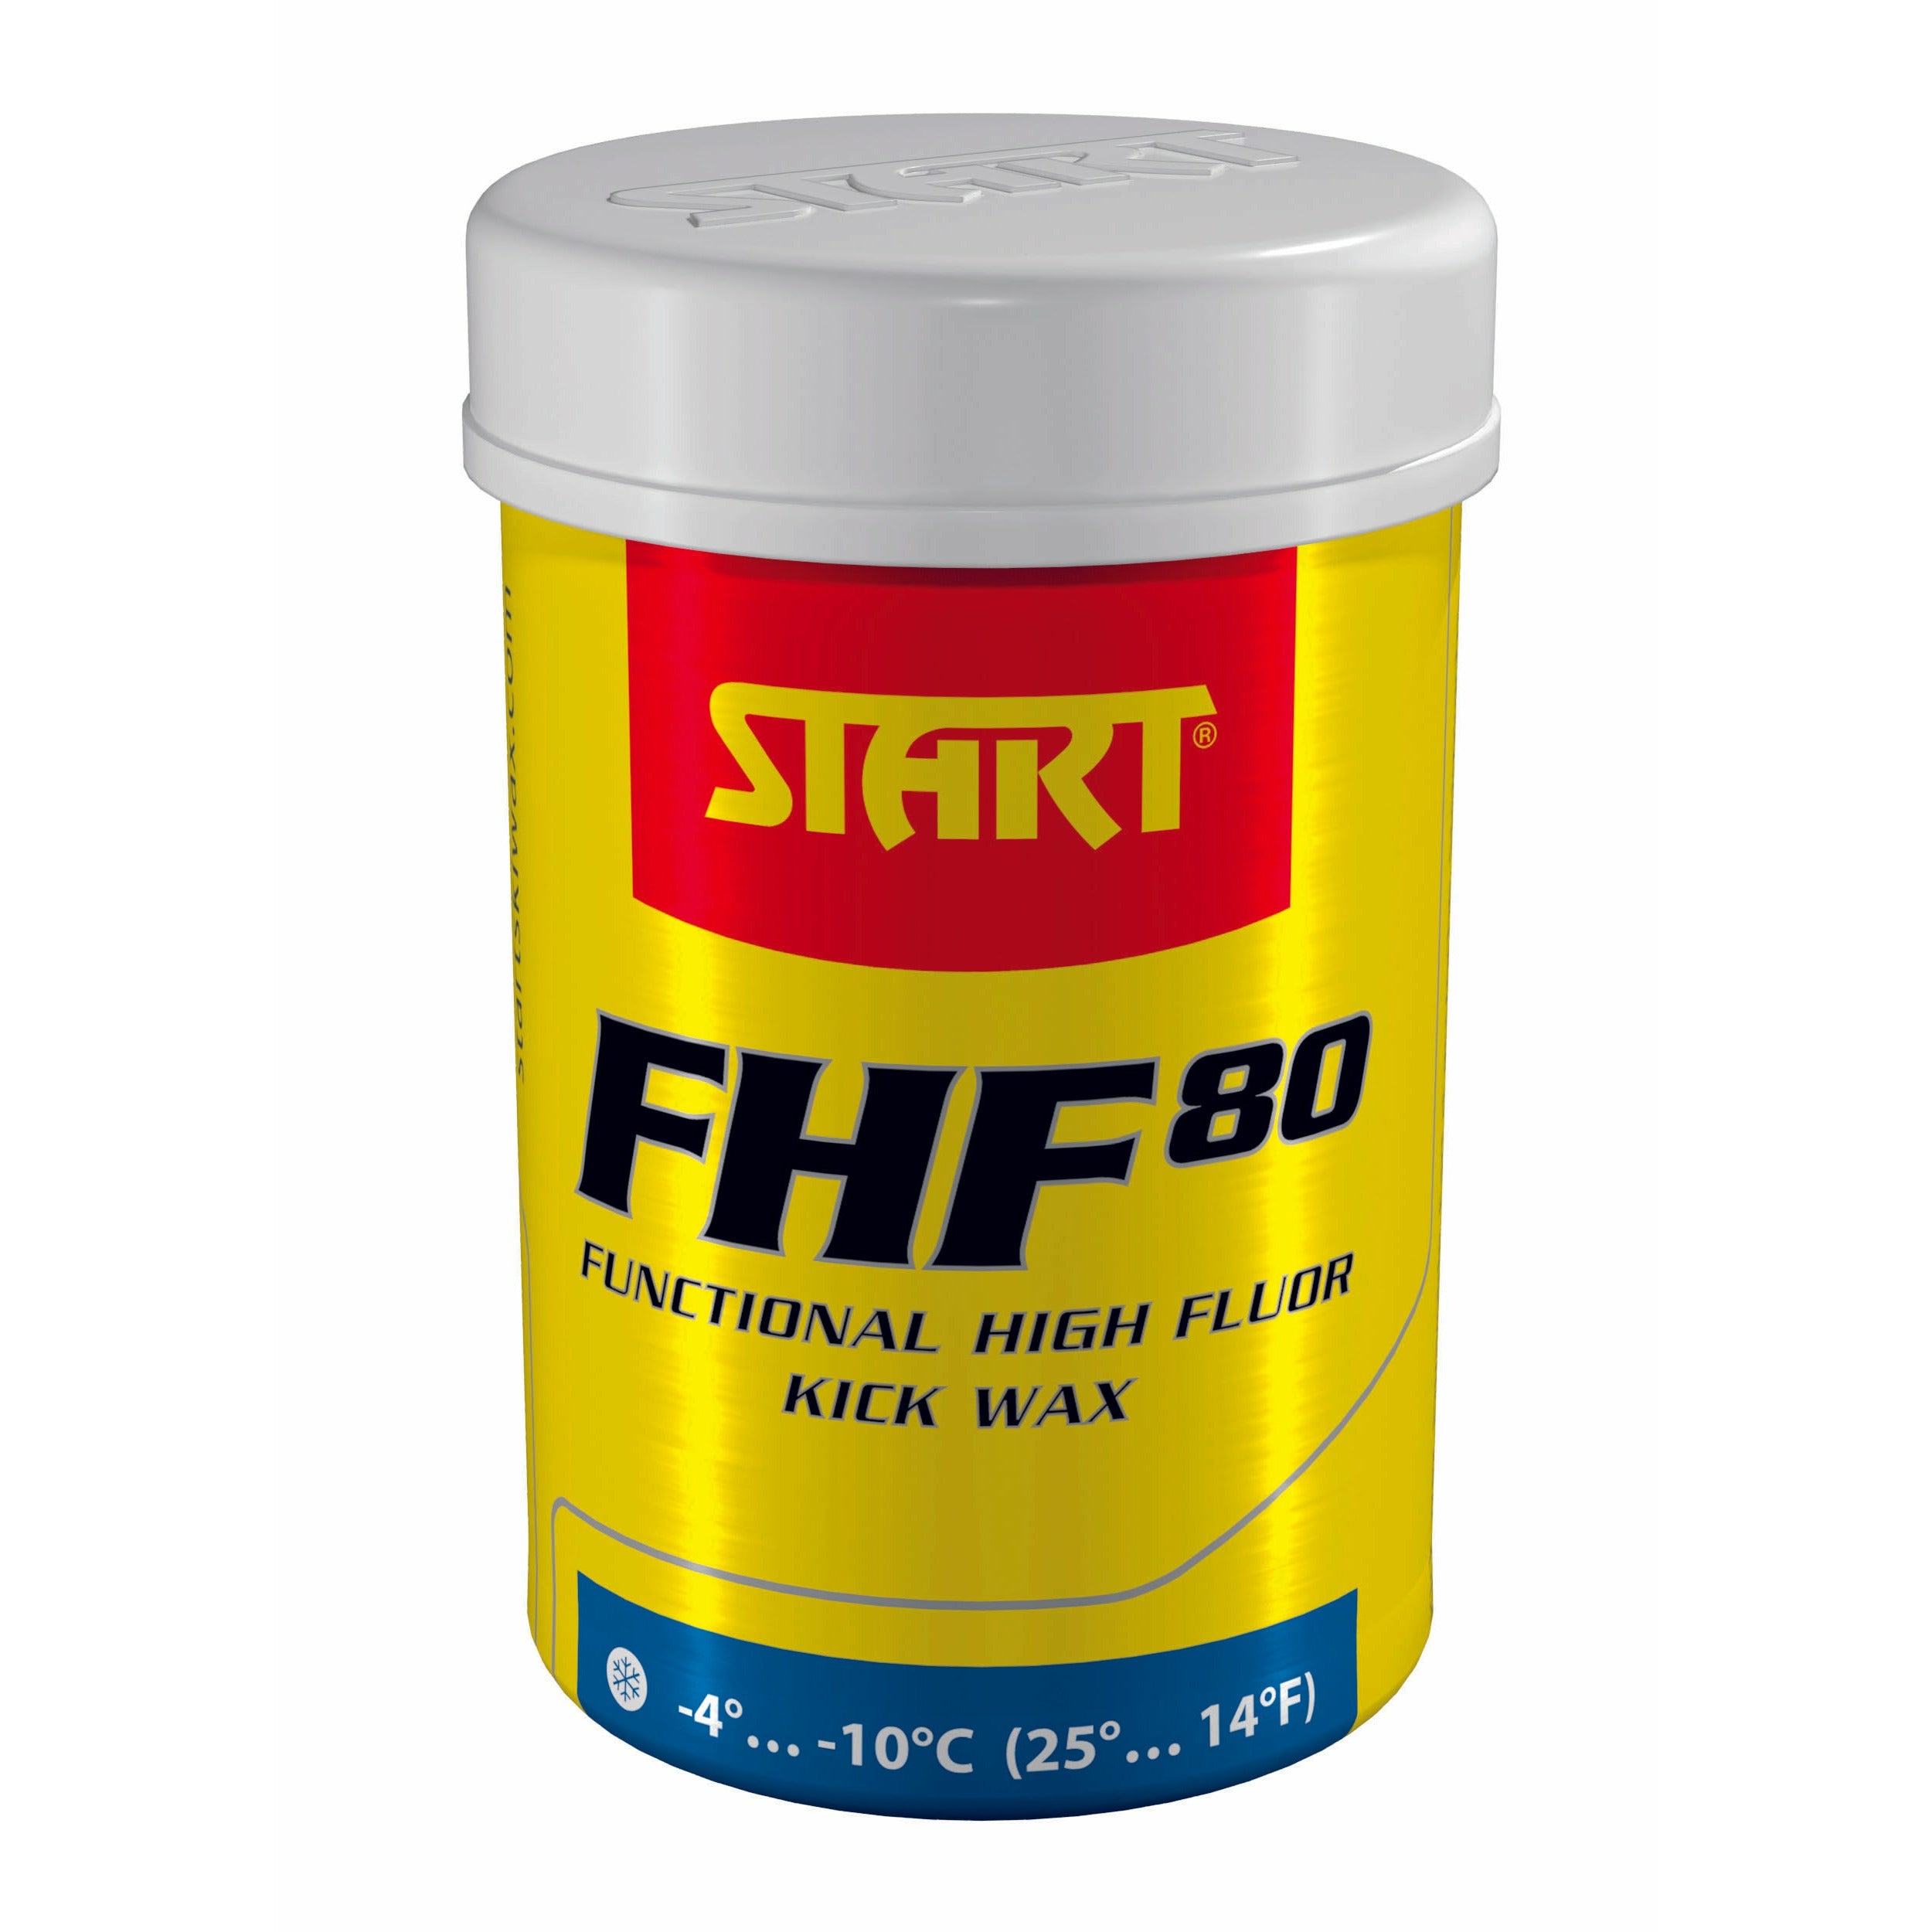 Start FHF80 Kick Wax 45g